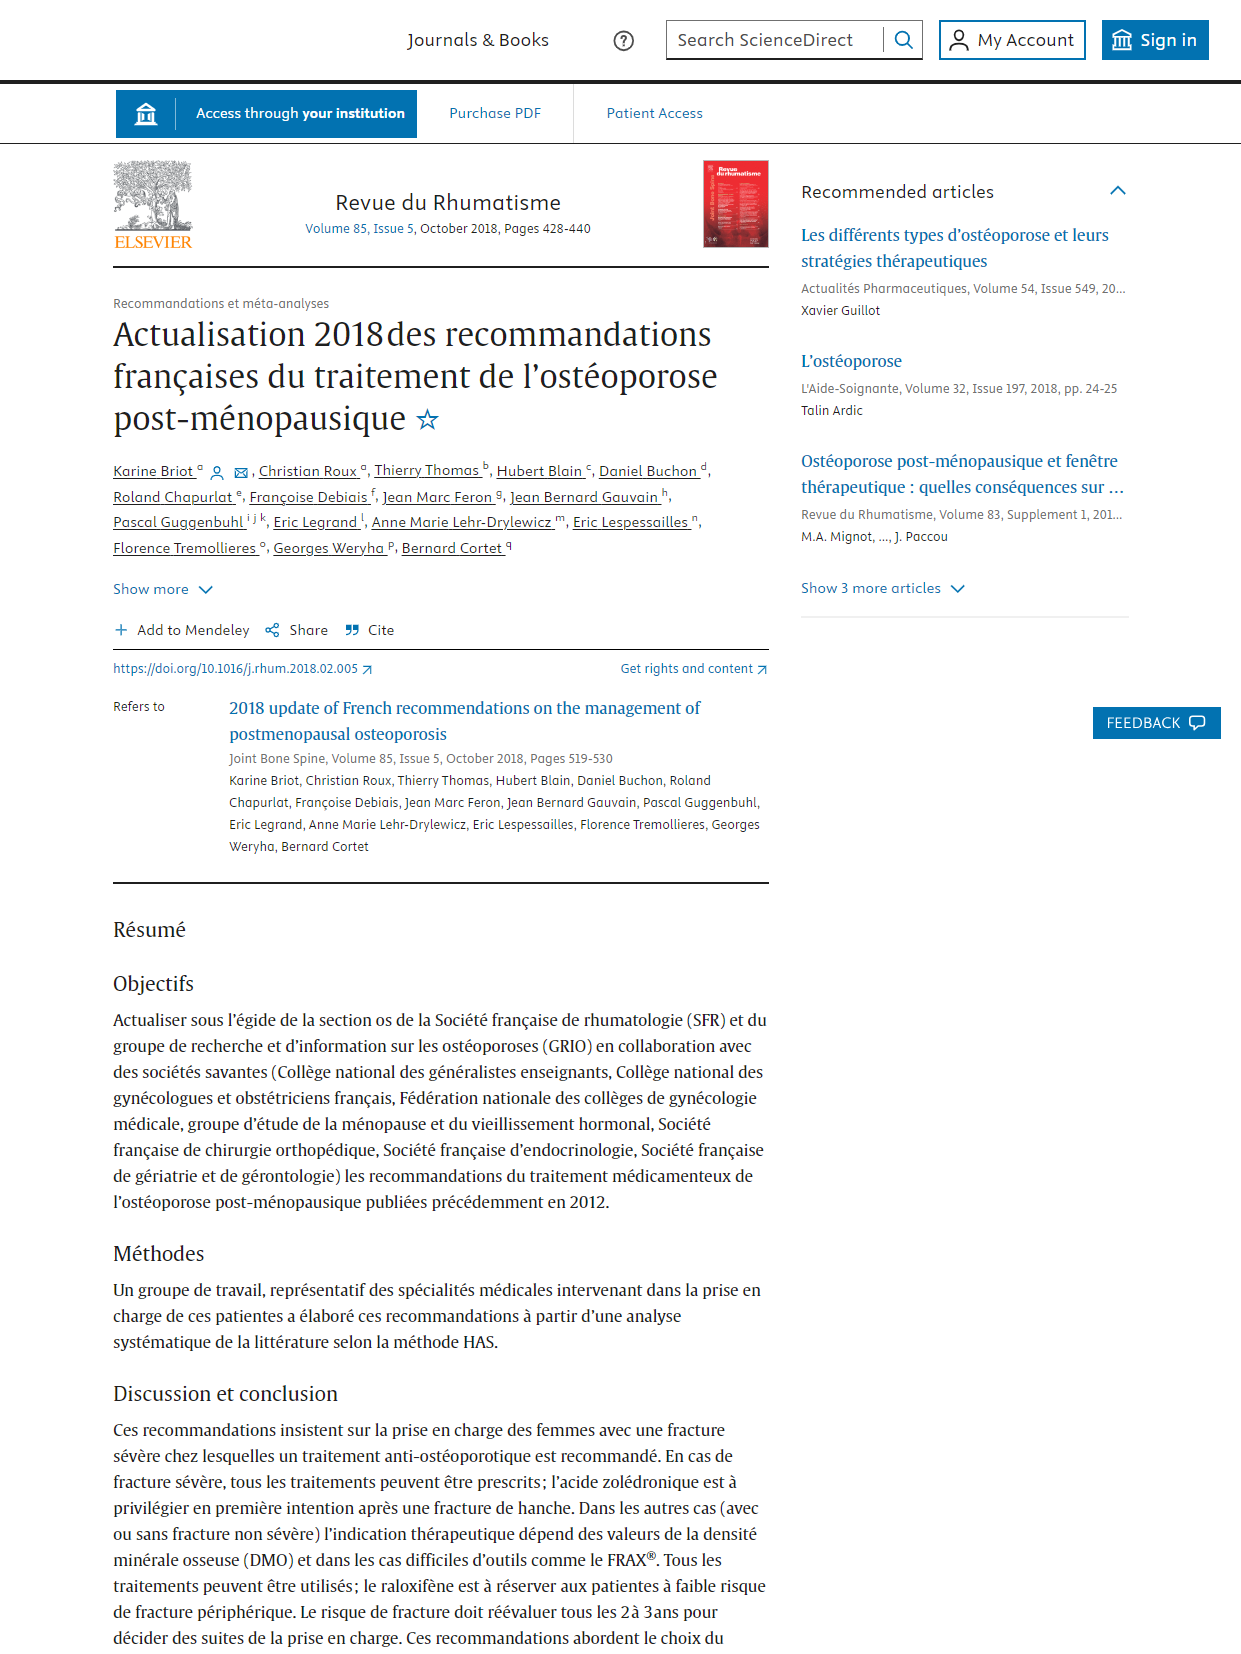 Actualisation 2018 des recommandations françaises du traitement de l’ostéoporose post-ménopausique (SFR 2018)